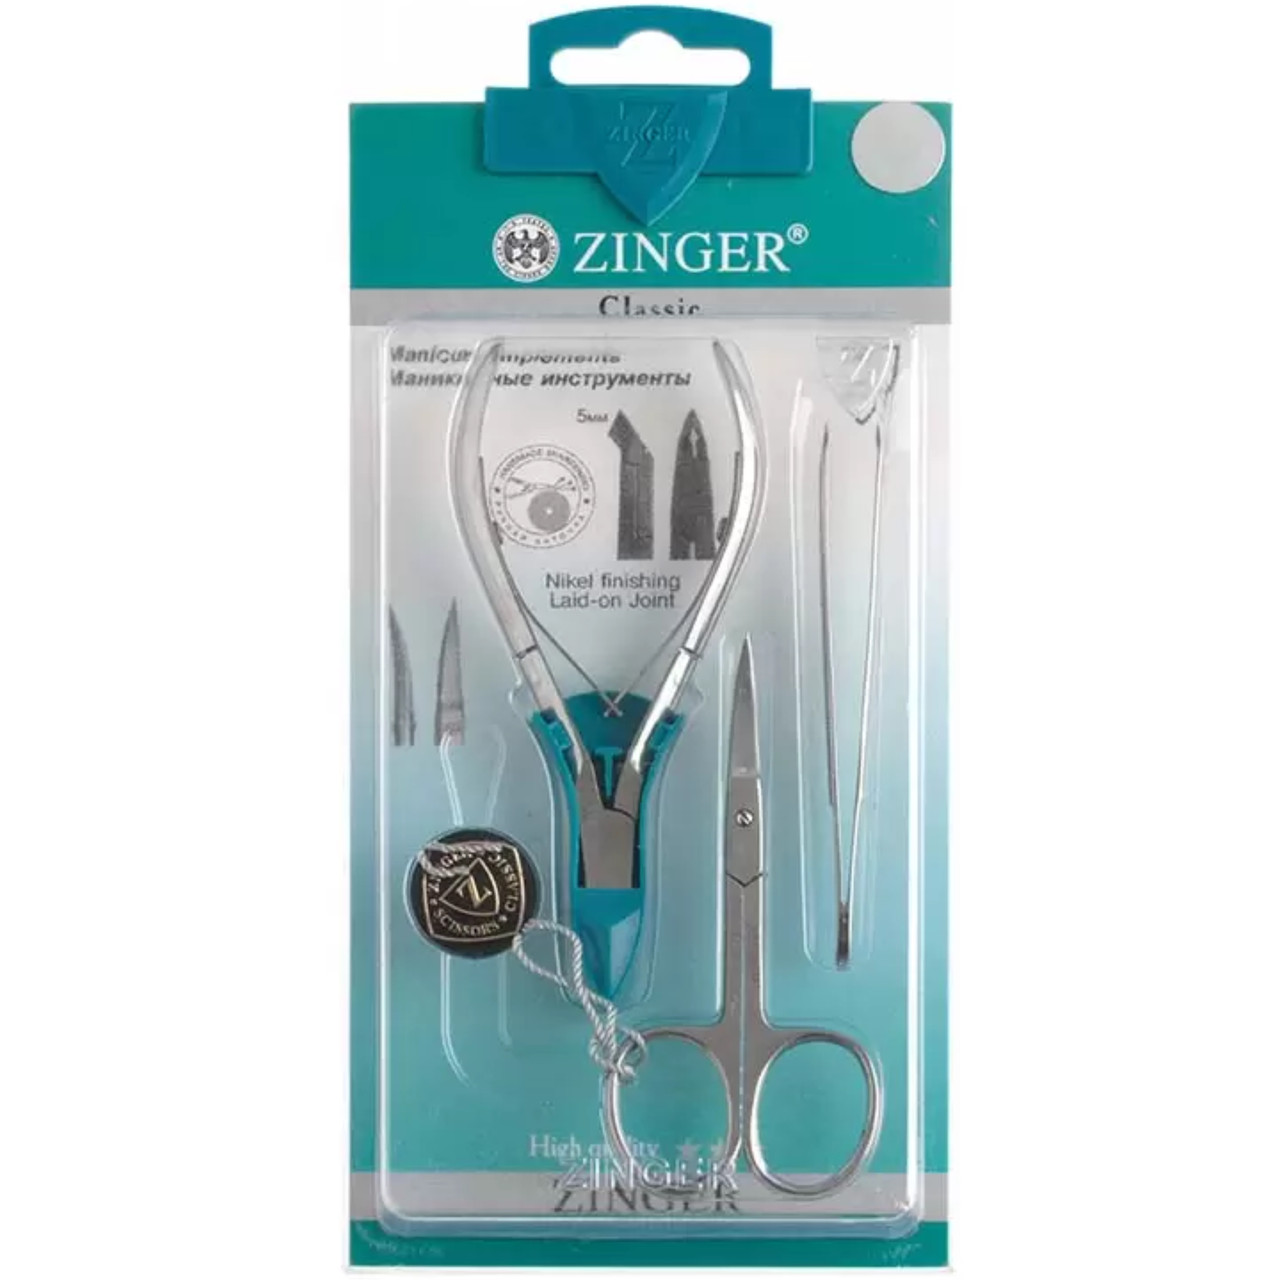 Набор маникюрных инструментов Zinger из 3 предметов (ножницы, кусачки, пинцет)